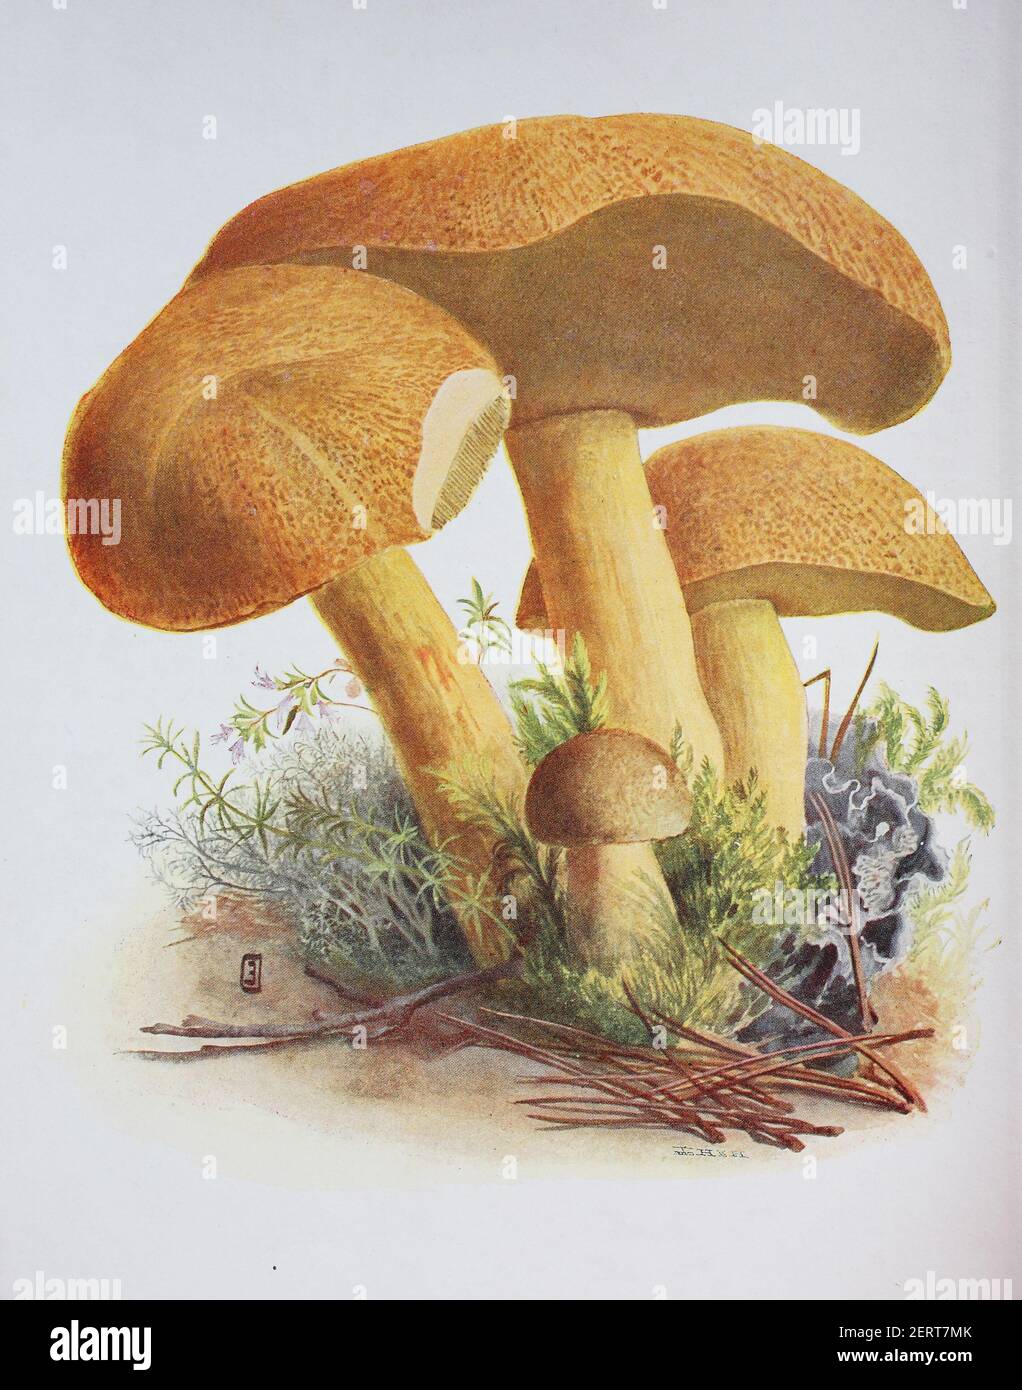 Le Suillus variegatus, communément appelé boléte de velours ou boléte variegé, est une espèce de champignons comestibles du genre Suillus, reproduction numérique d'une ilustration d'Emil Doerstling (1859-1940) Banque D'Images